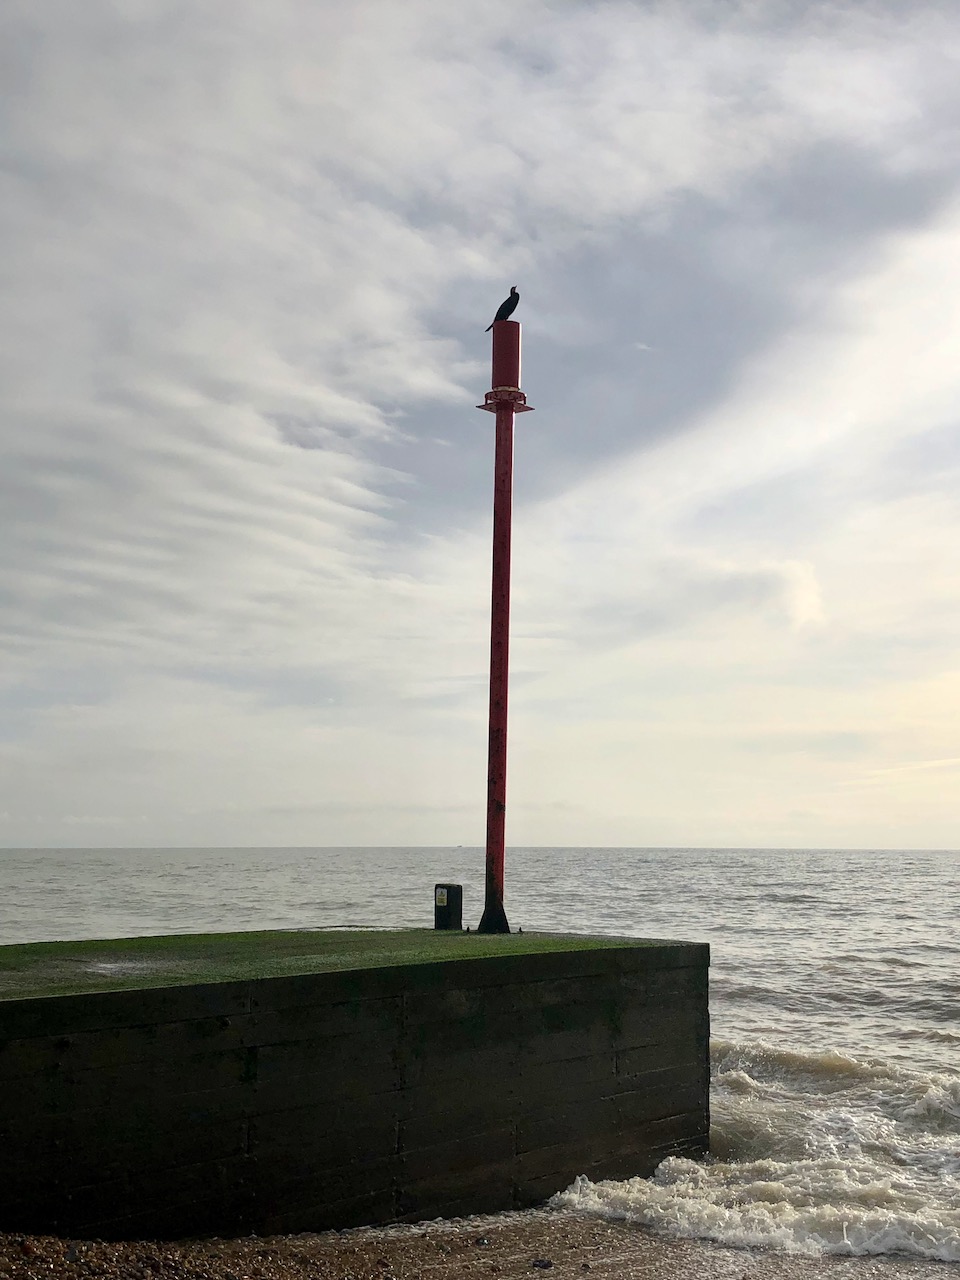 Cormorant on a pole